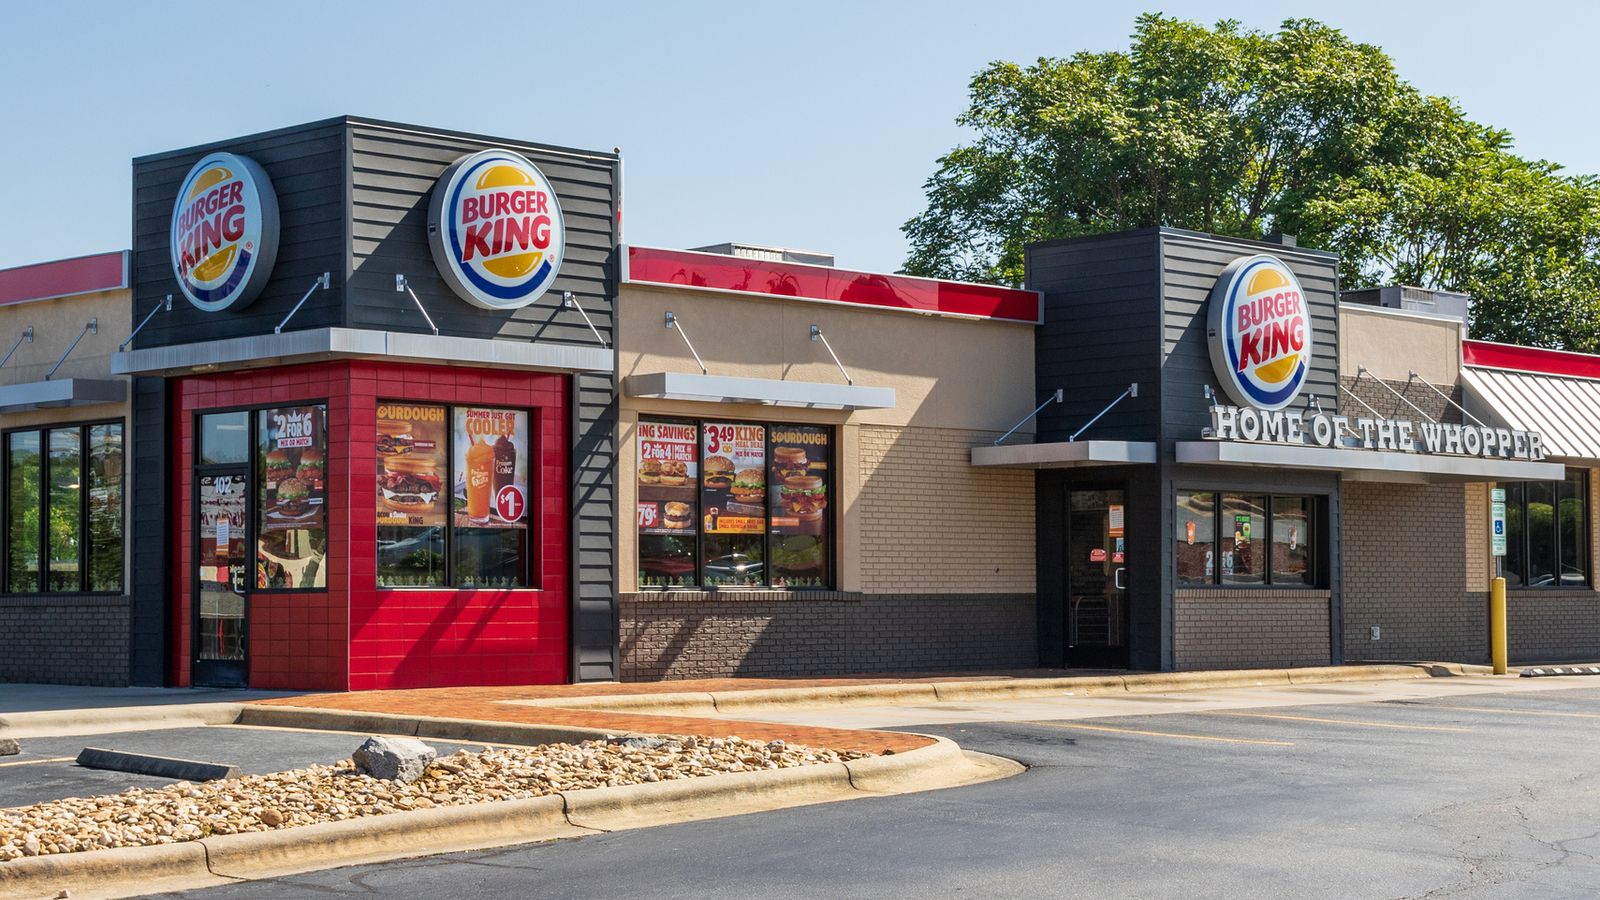 Рекламите в магазините на Burger King „може да представят погрешно размера на Whoppers“, съдия във Флорида постановява